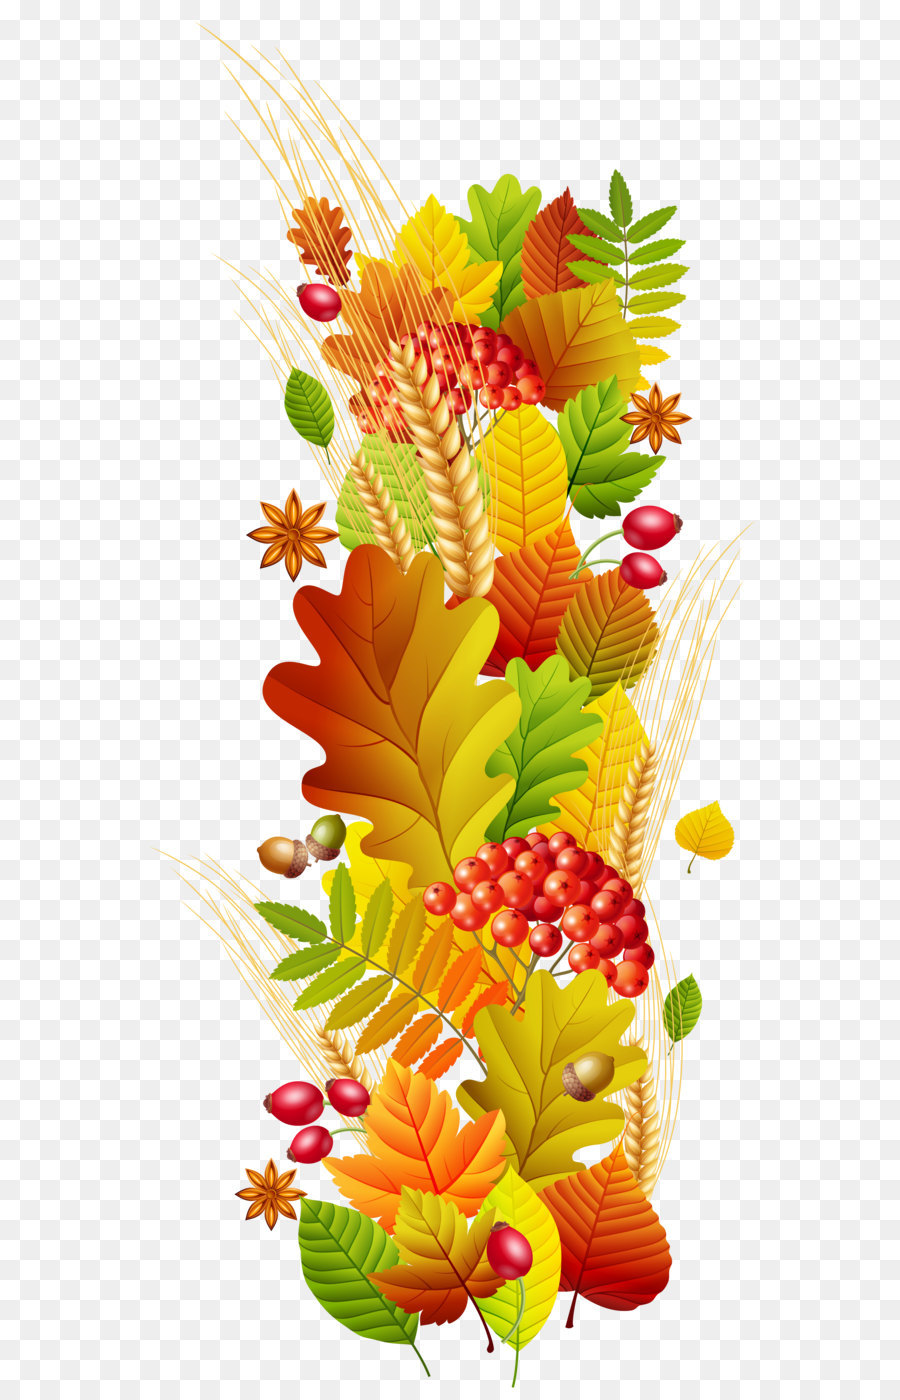 Autumn Season Floral design Clip art - Fall Deco PNG Clipart Transparent Picture png download - 2340*5024 - Free Transparent Paper png Download.